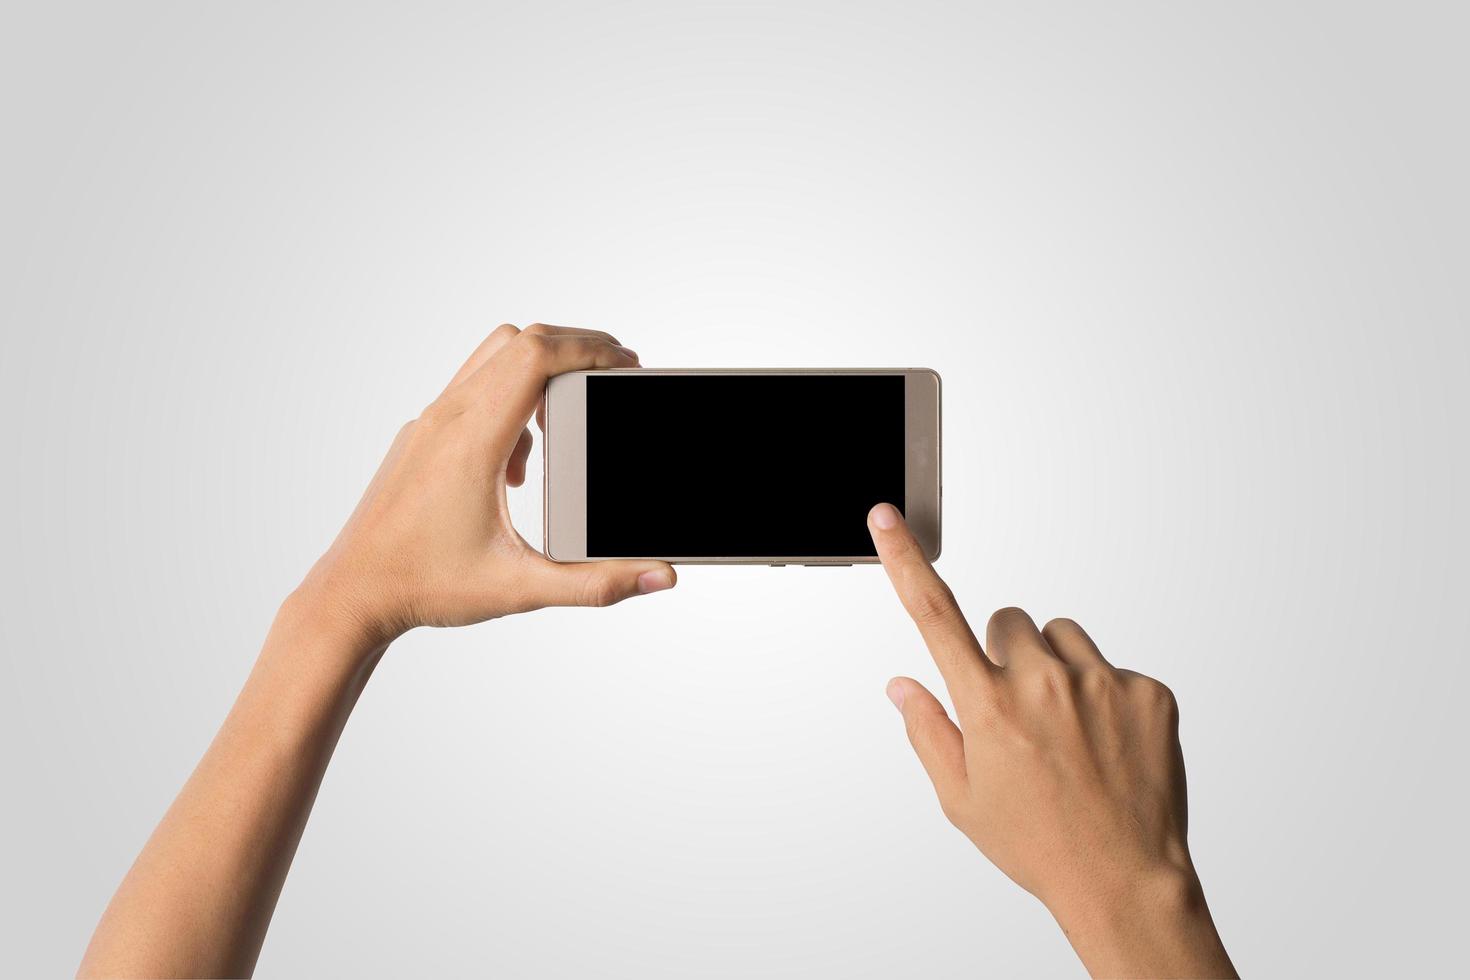 Hand hält ein Smartphone mit leerem Bildschirm foto